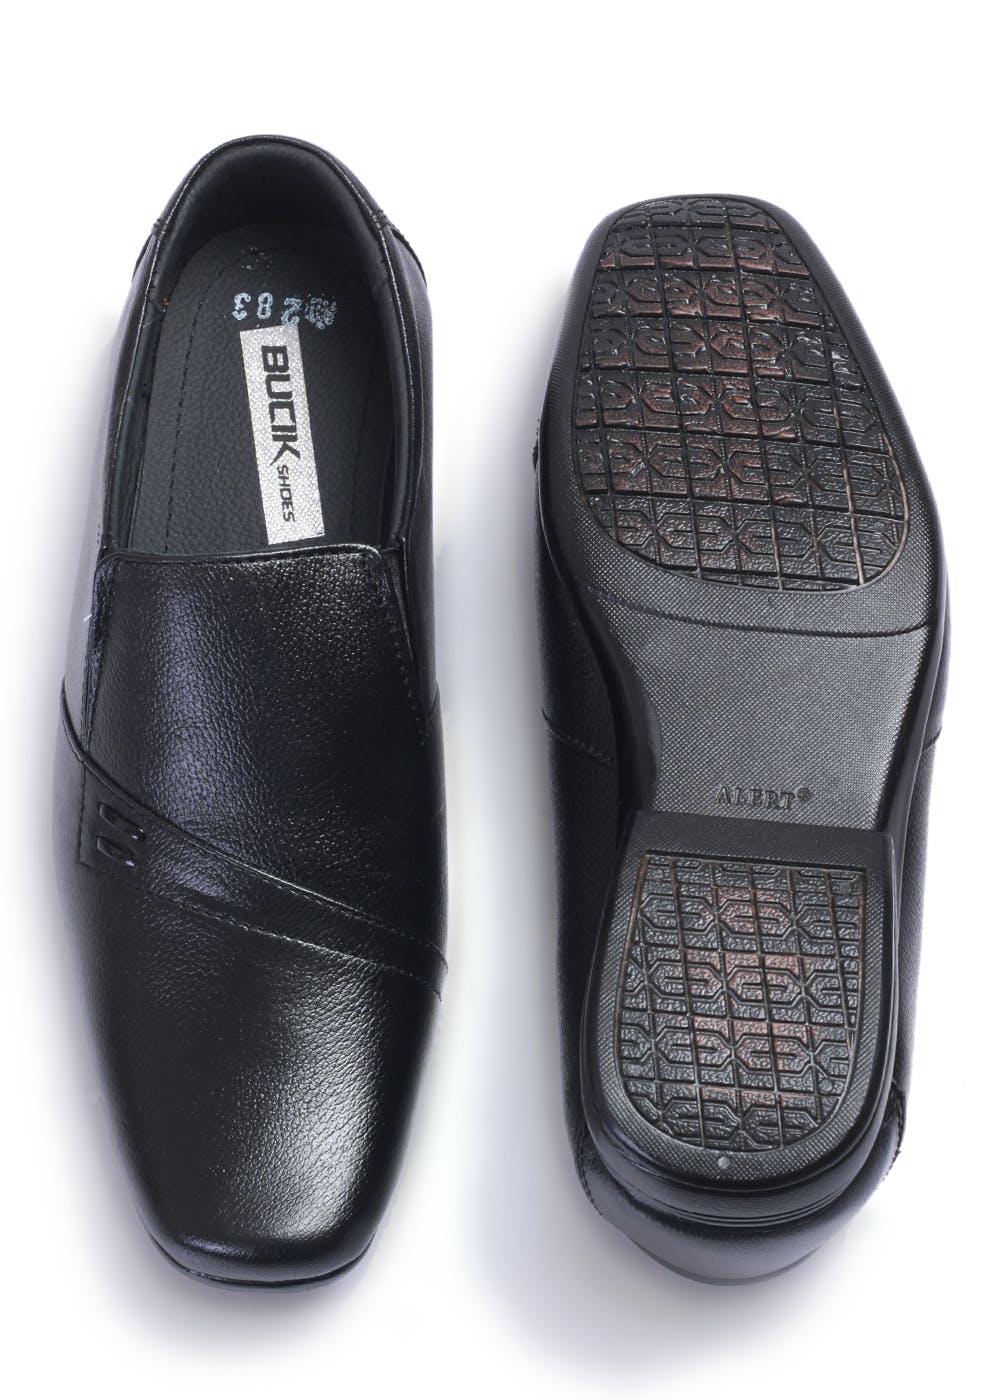 GUCCI Vintage Black Leather Square Toe Loafer Slingback Heels  eBay